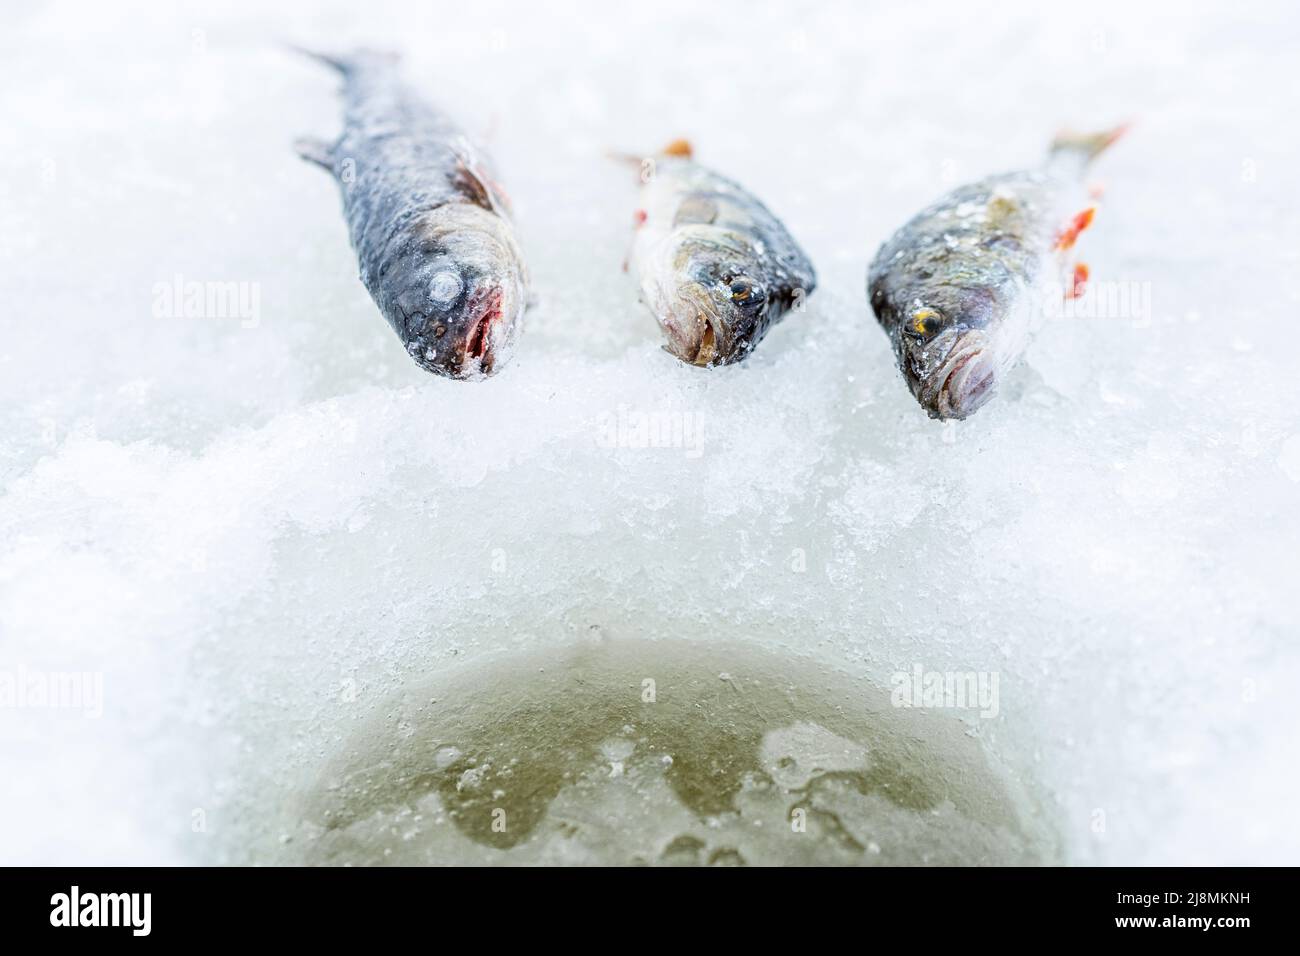 Primer plano de los peces recién capturados con la pesca en hielo, Laponia, Suecia Foto de stock